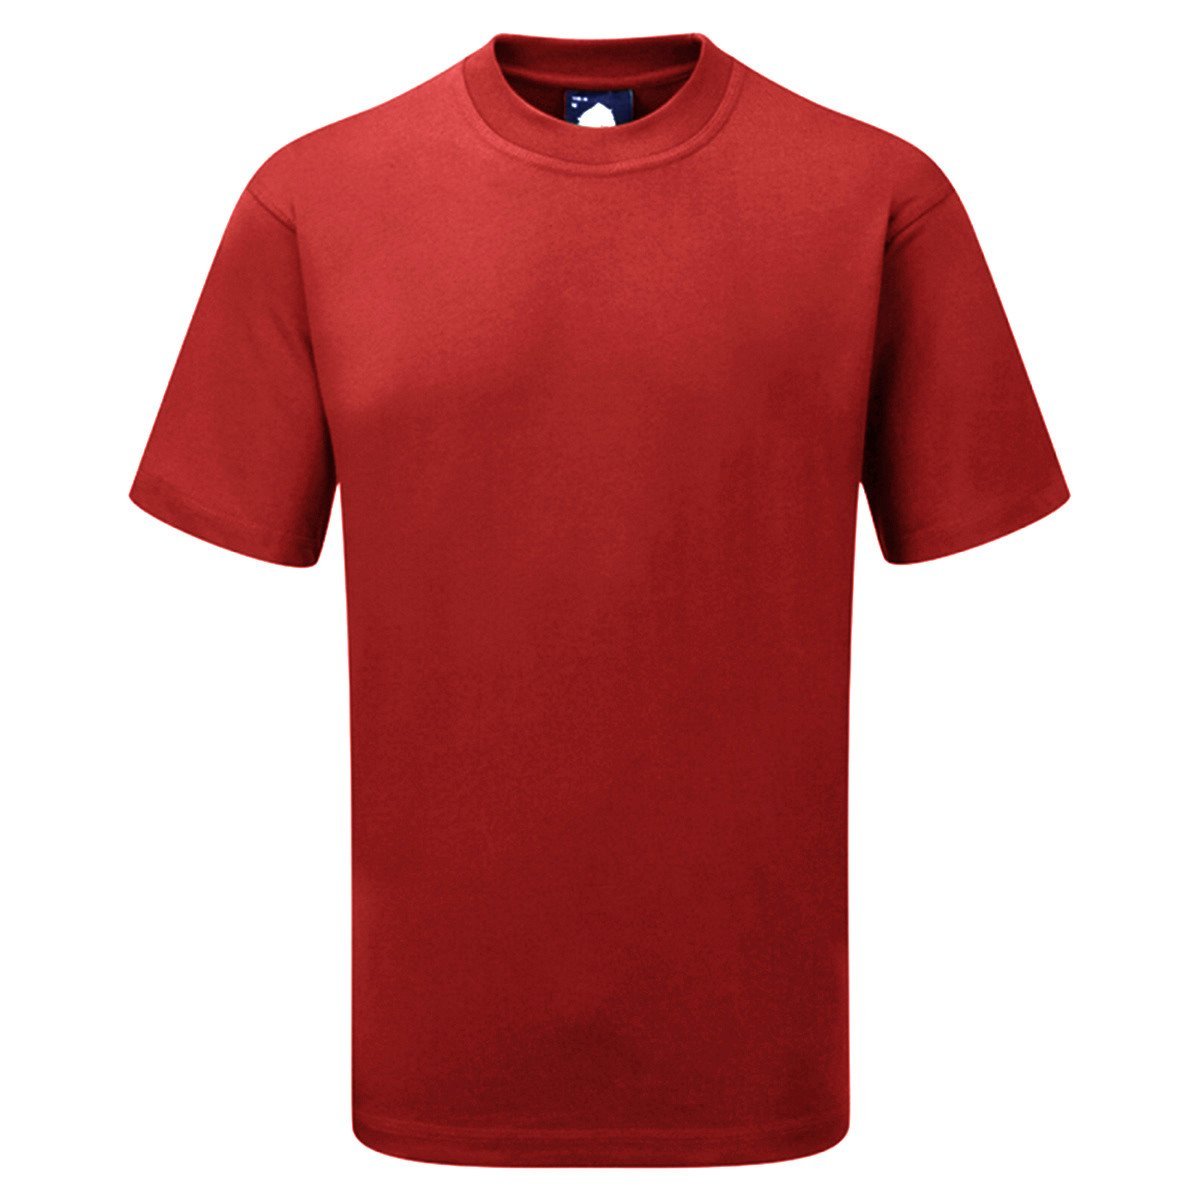 Jackson Short Sleeve B Quality Tee Shirt B Quality Image Red L 